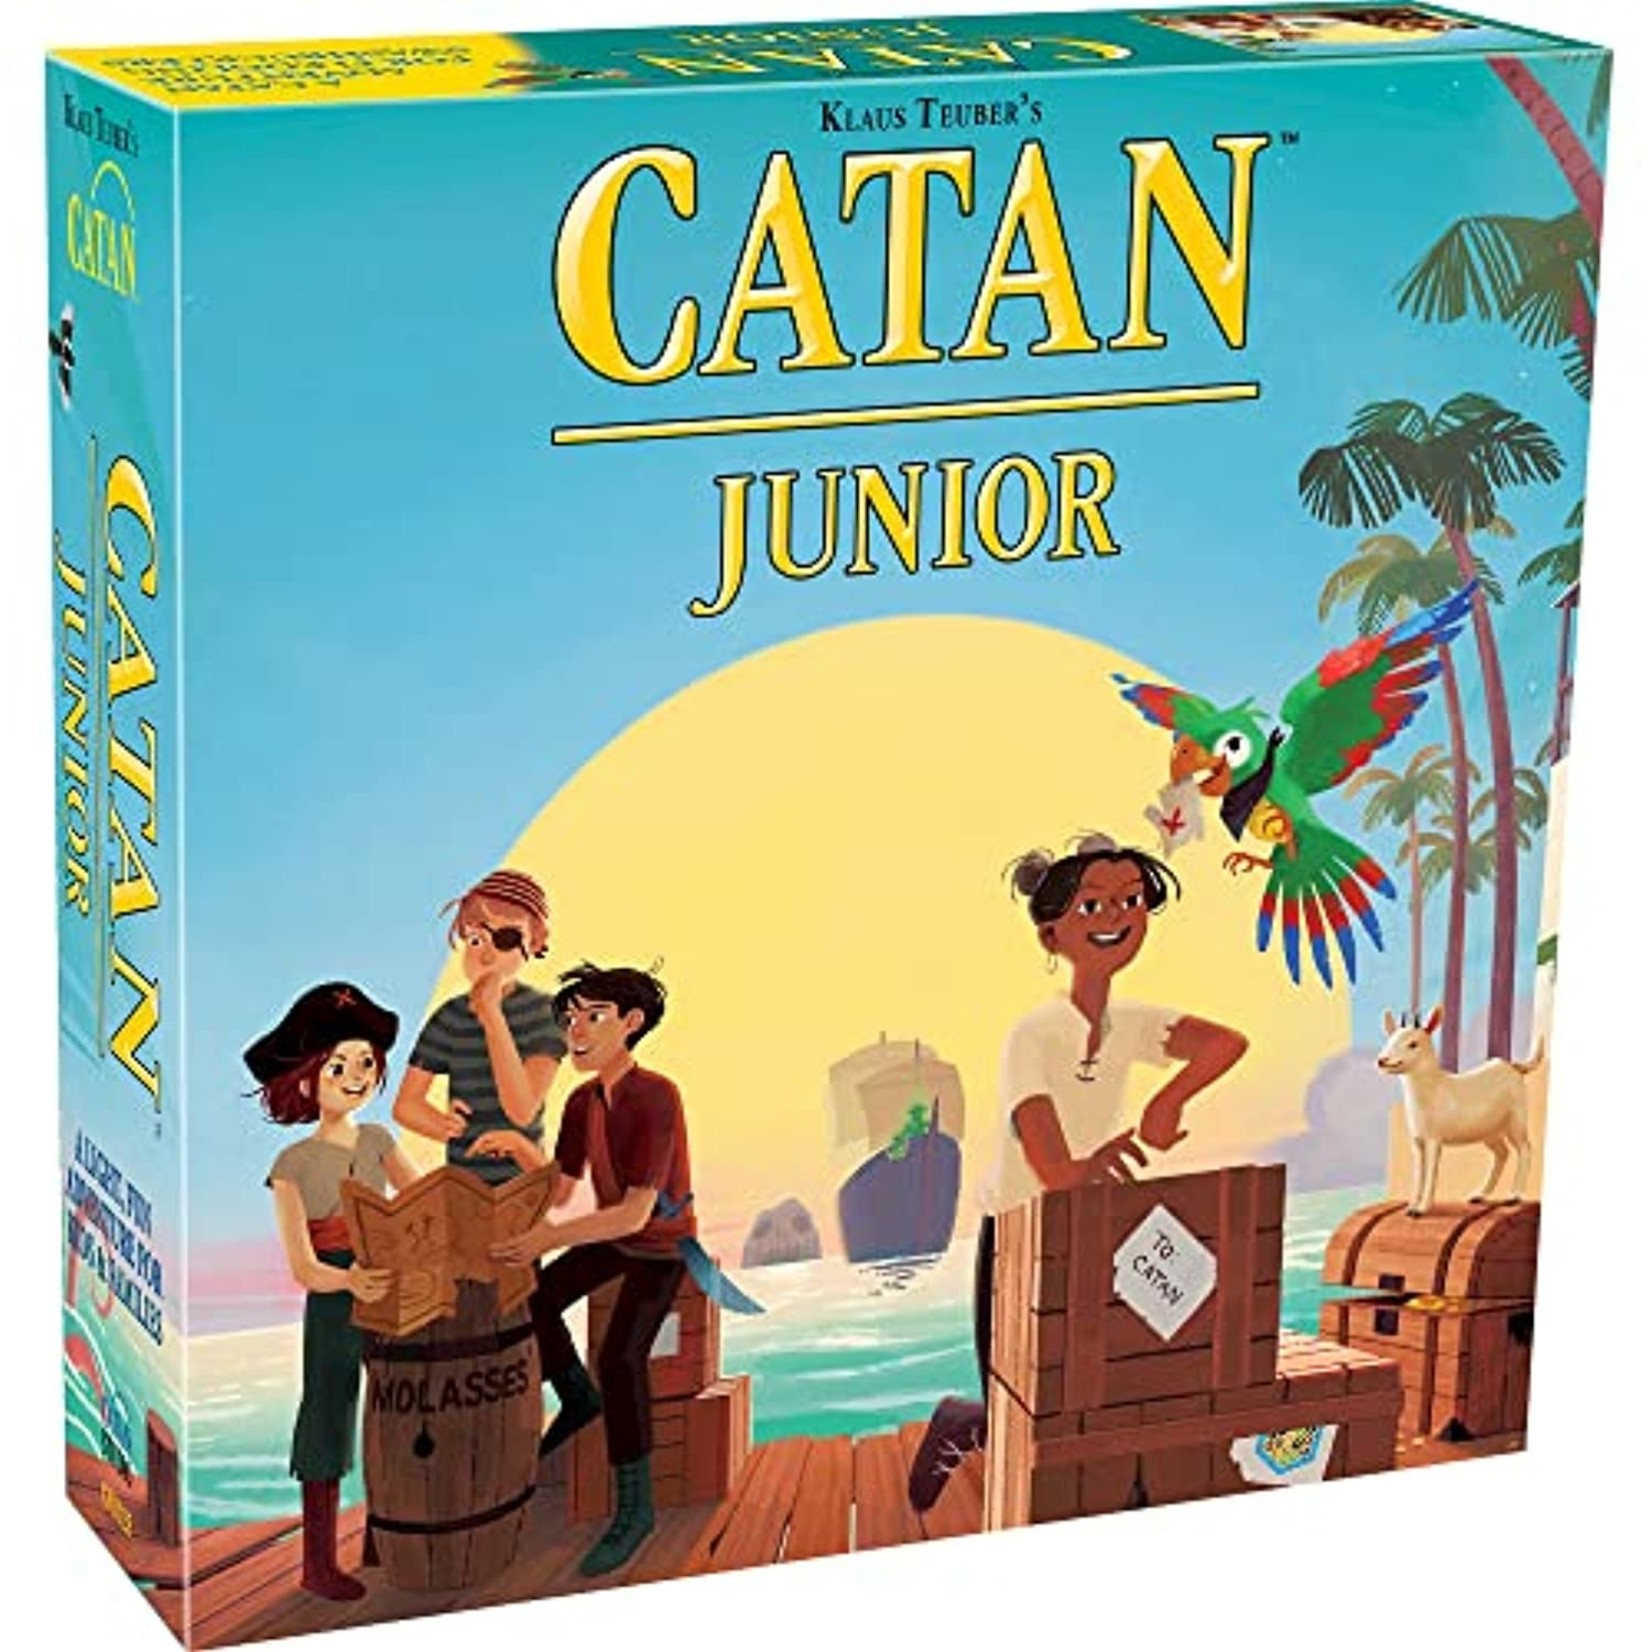 Catan Studio Catan Junior Kids Board Game for 2-4 Players